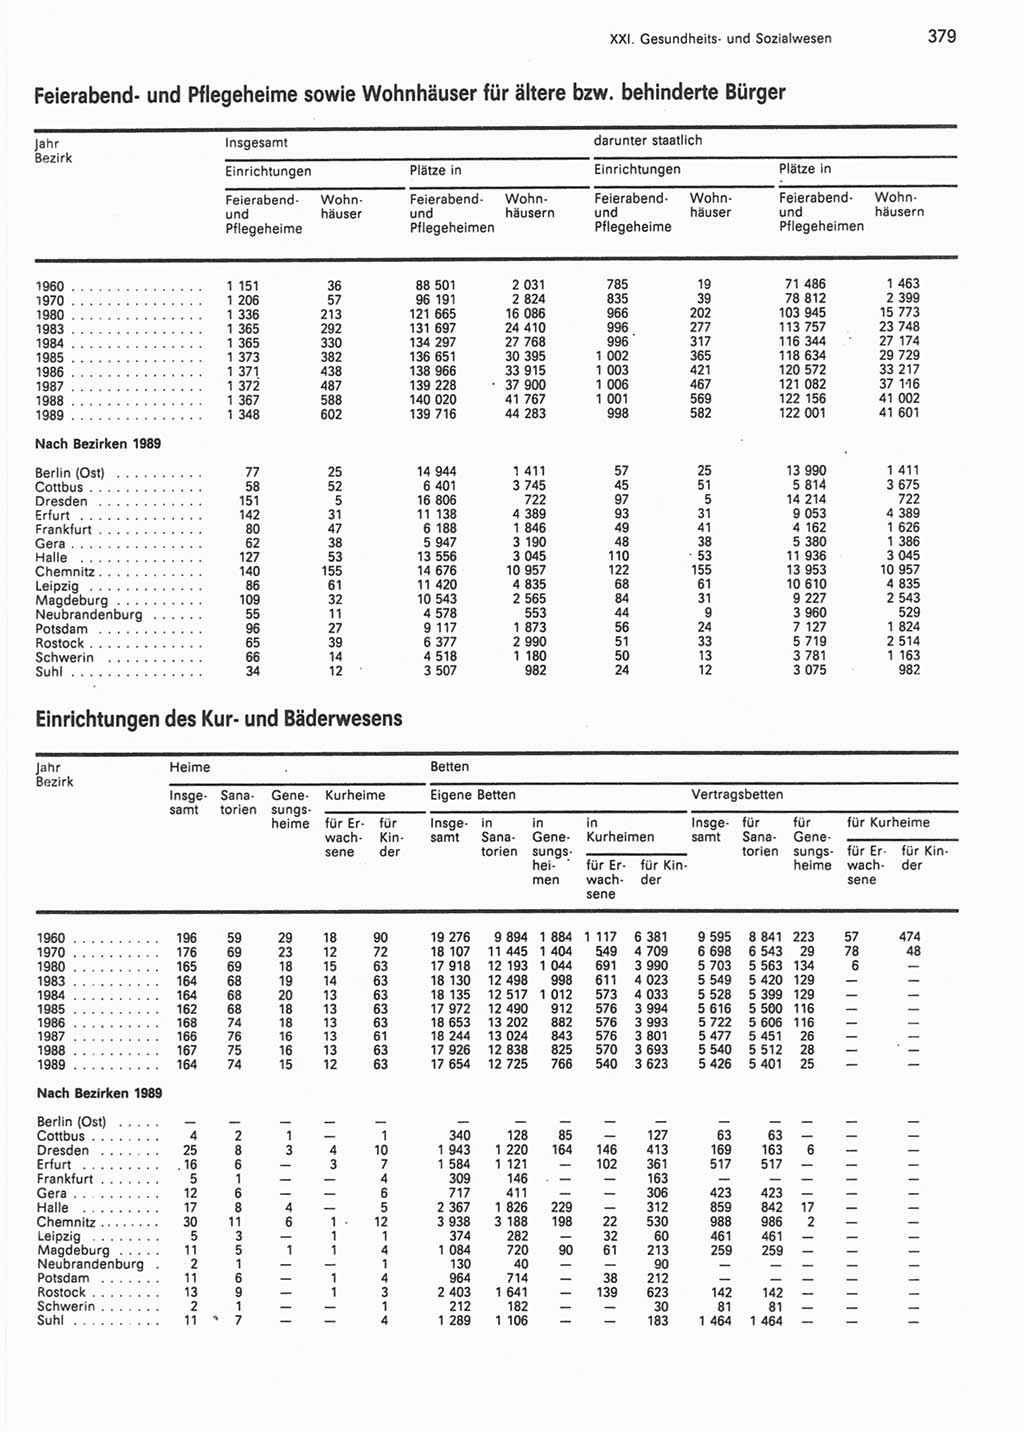 Statistisches Jahrbuch der Deutschen Demokratischen Republik (DDR) 1990, Seite 379 (Stat. Jb. DDR 1990, S. 379)